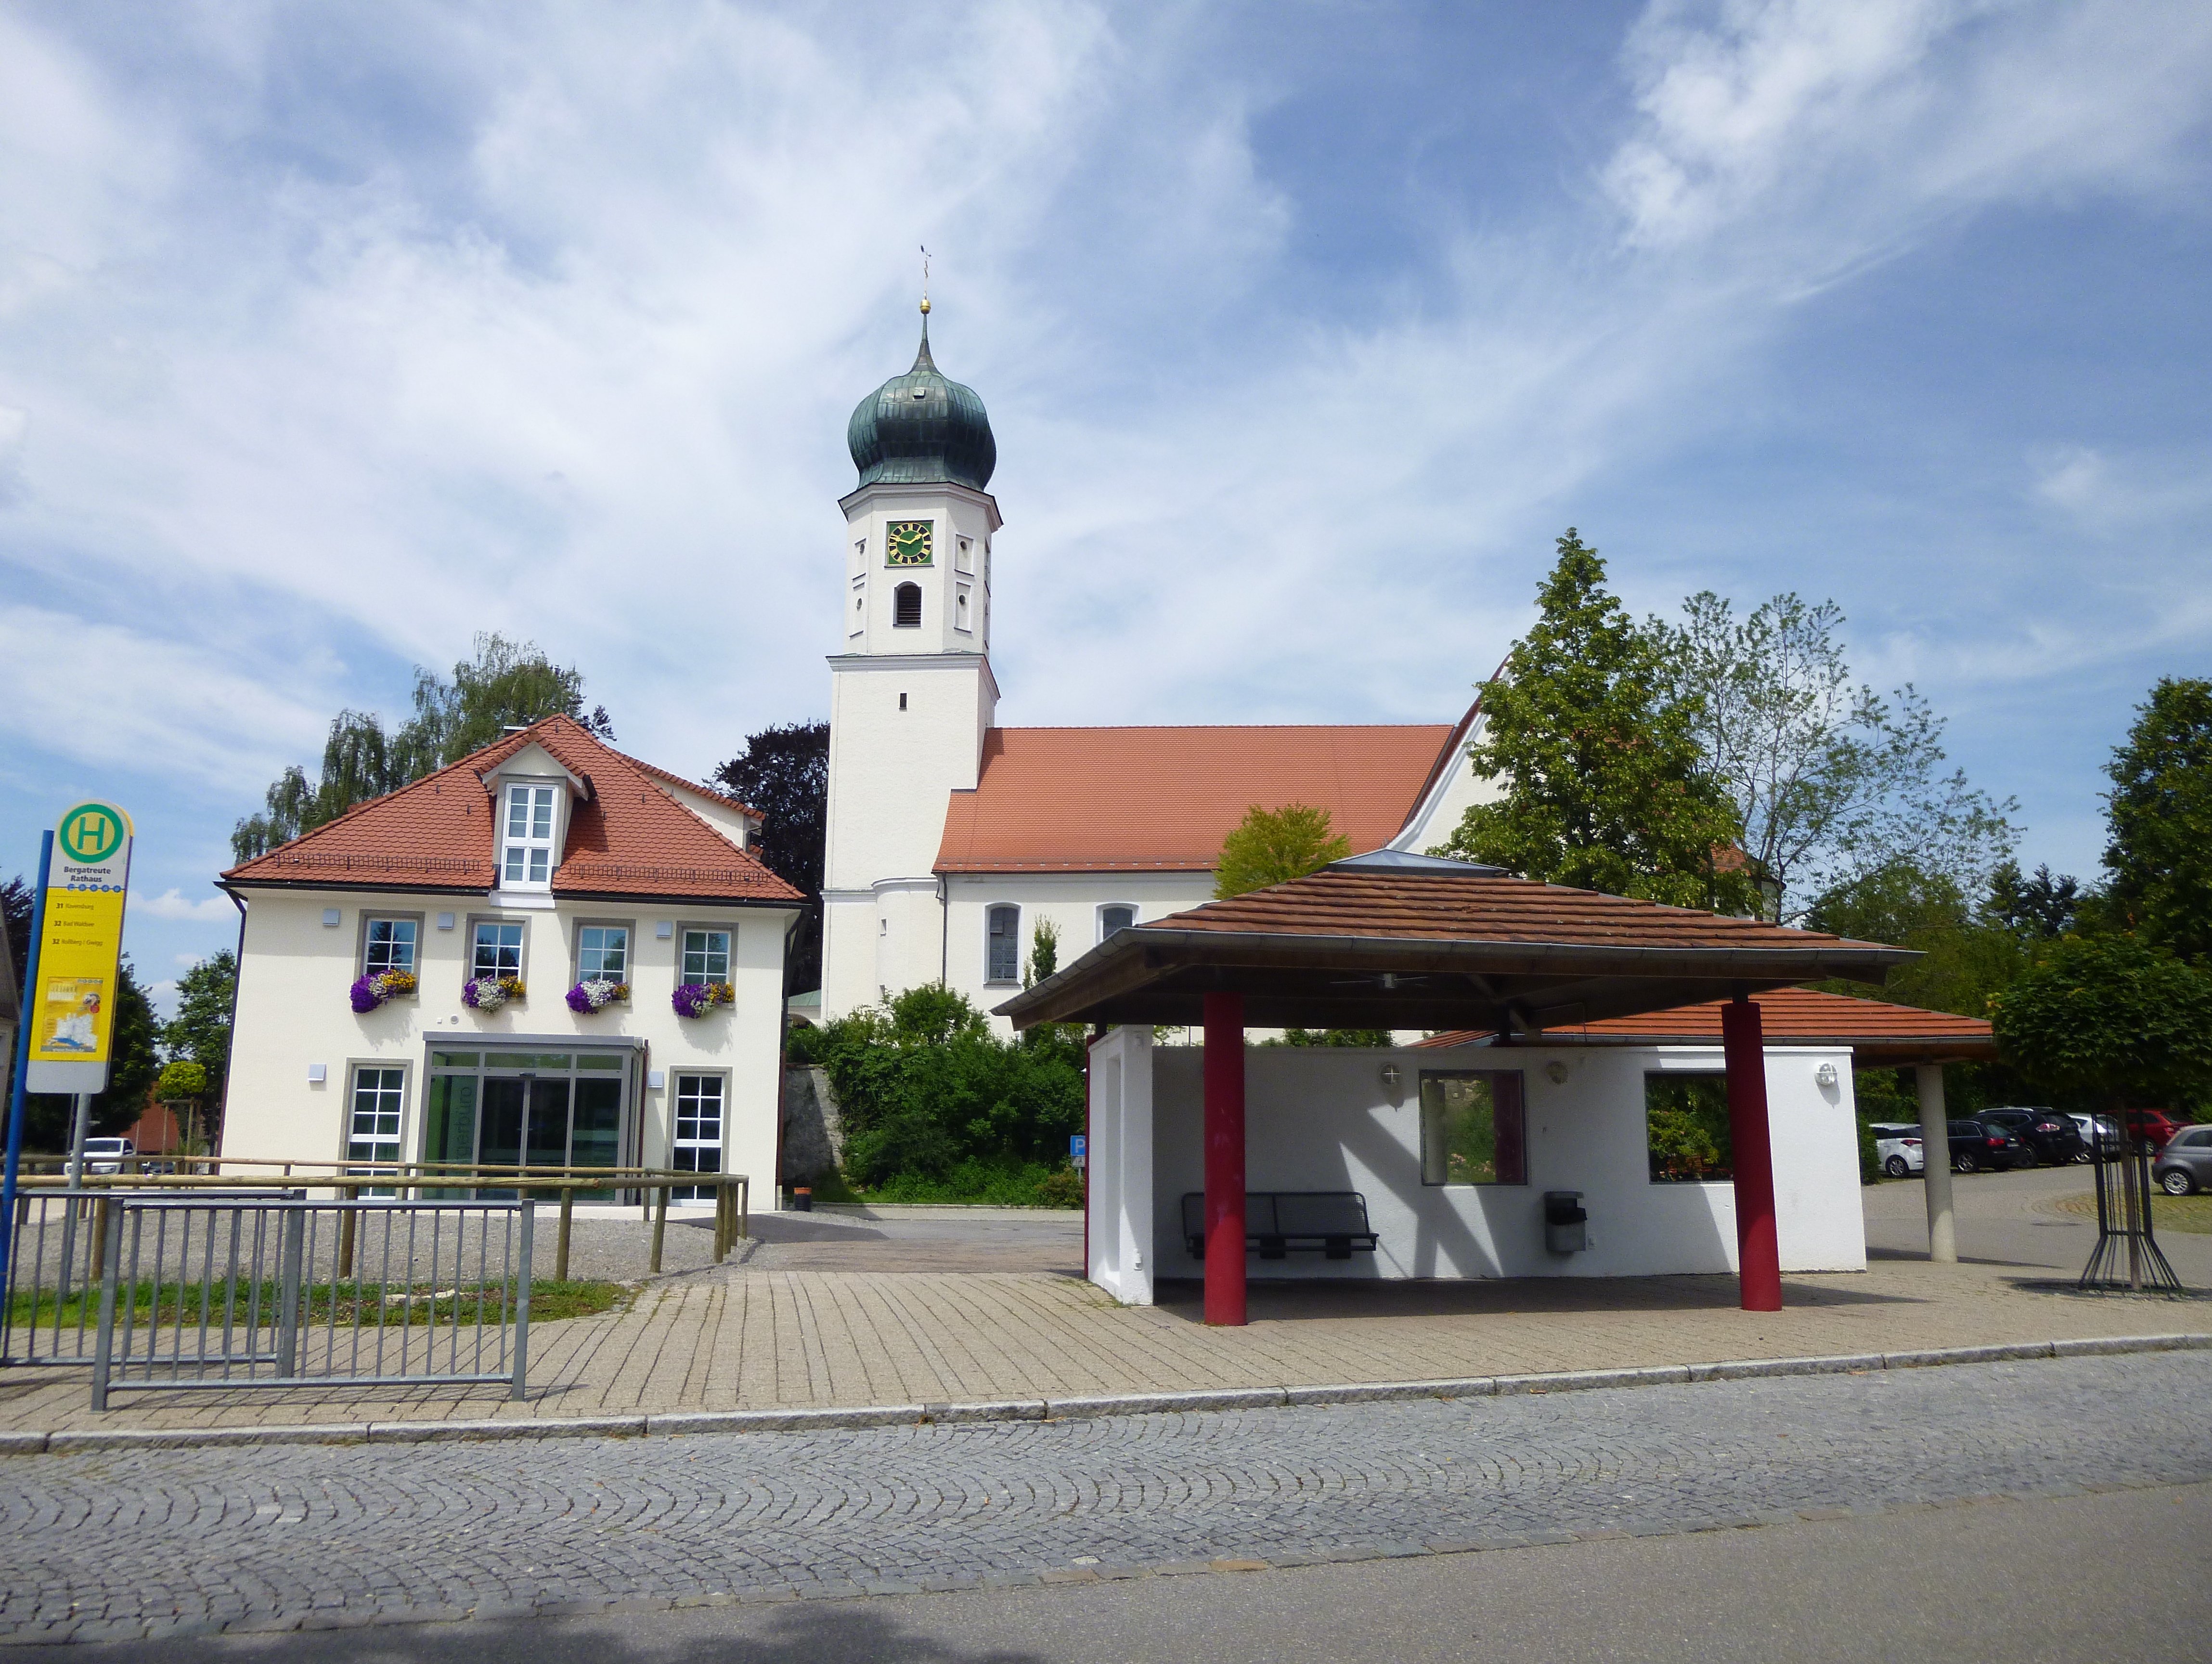  Rathaus mit Wallfahrtskirche und Bushaltestelle Ortsmitte - das Bild wird mit Klick vergrößert 